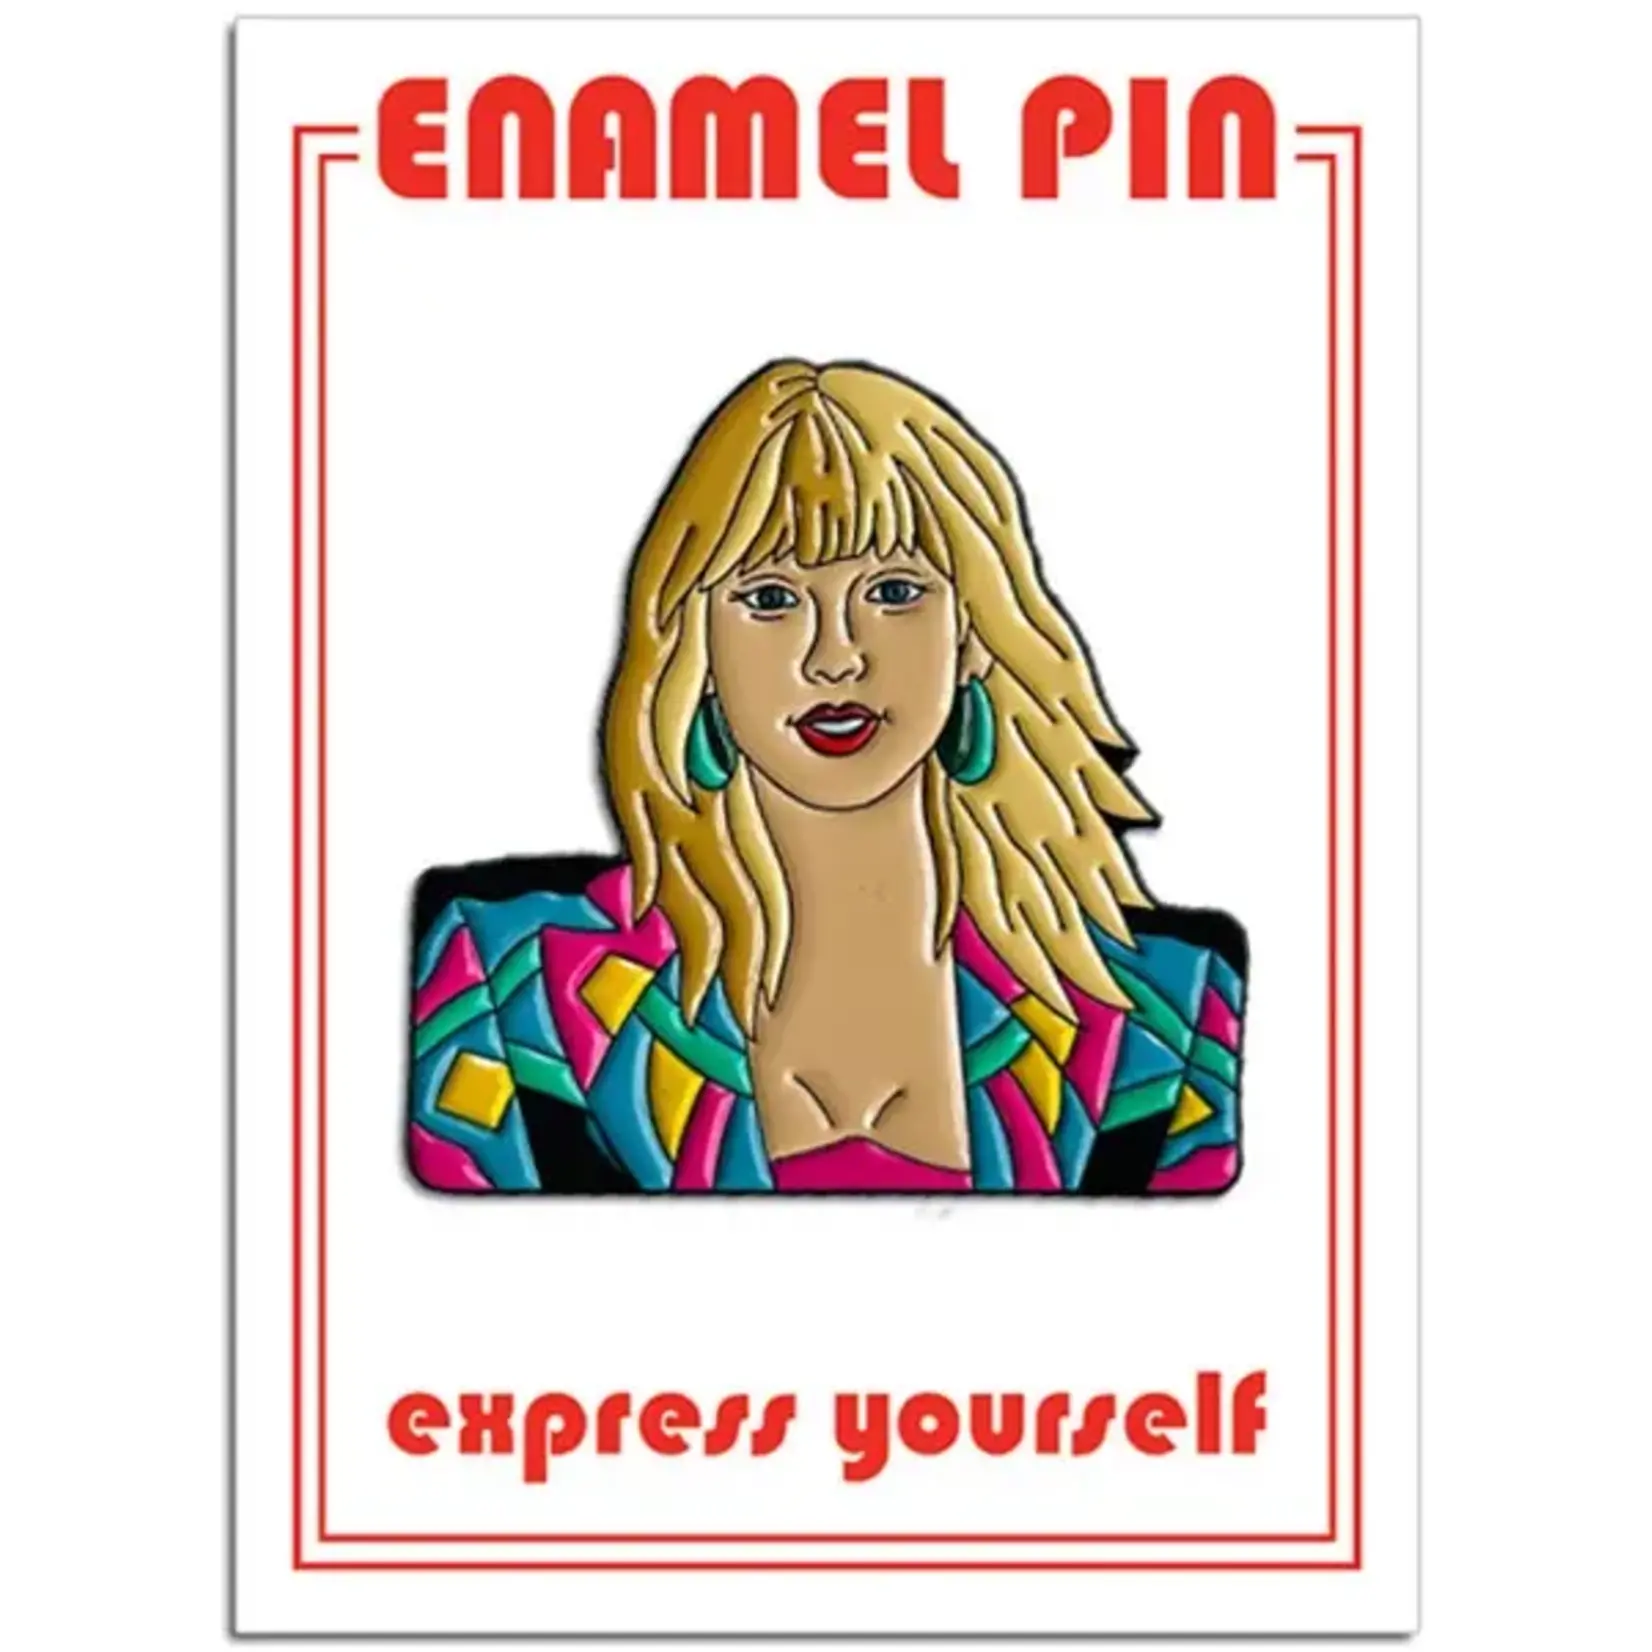 Taylor Swift Enamel Pin